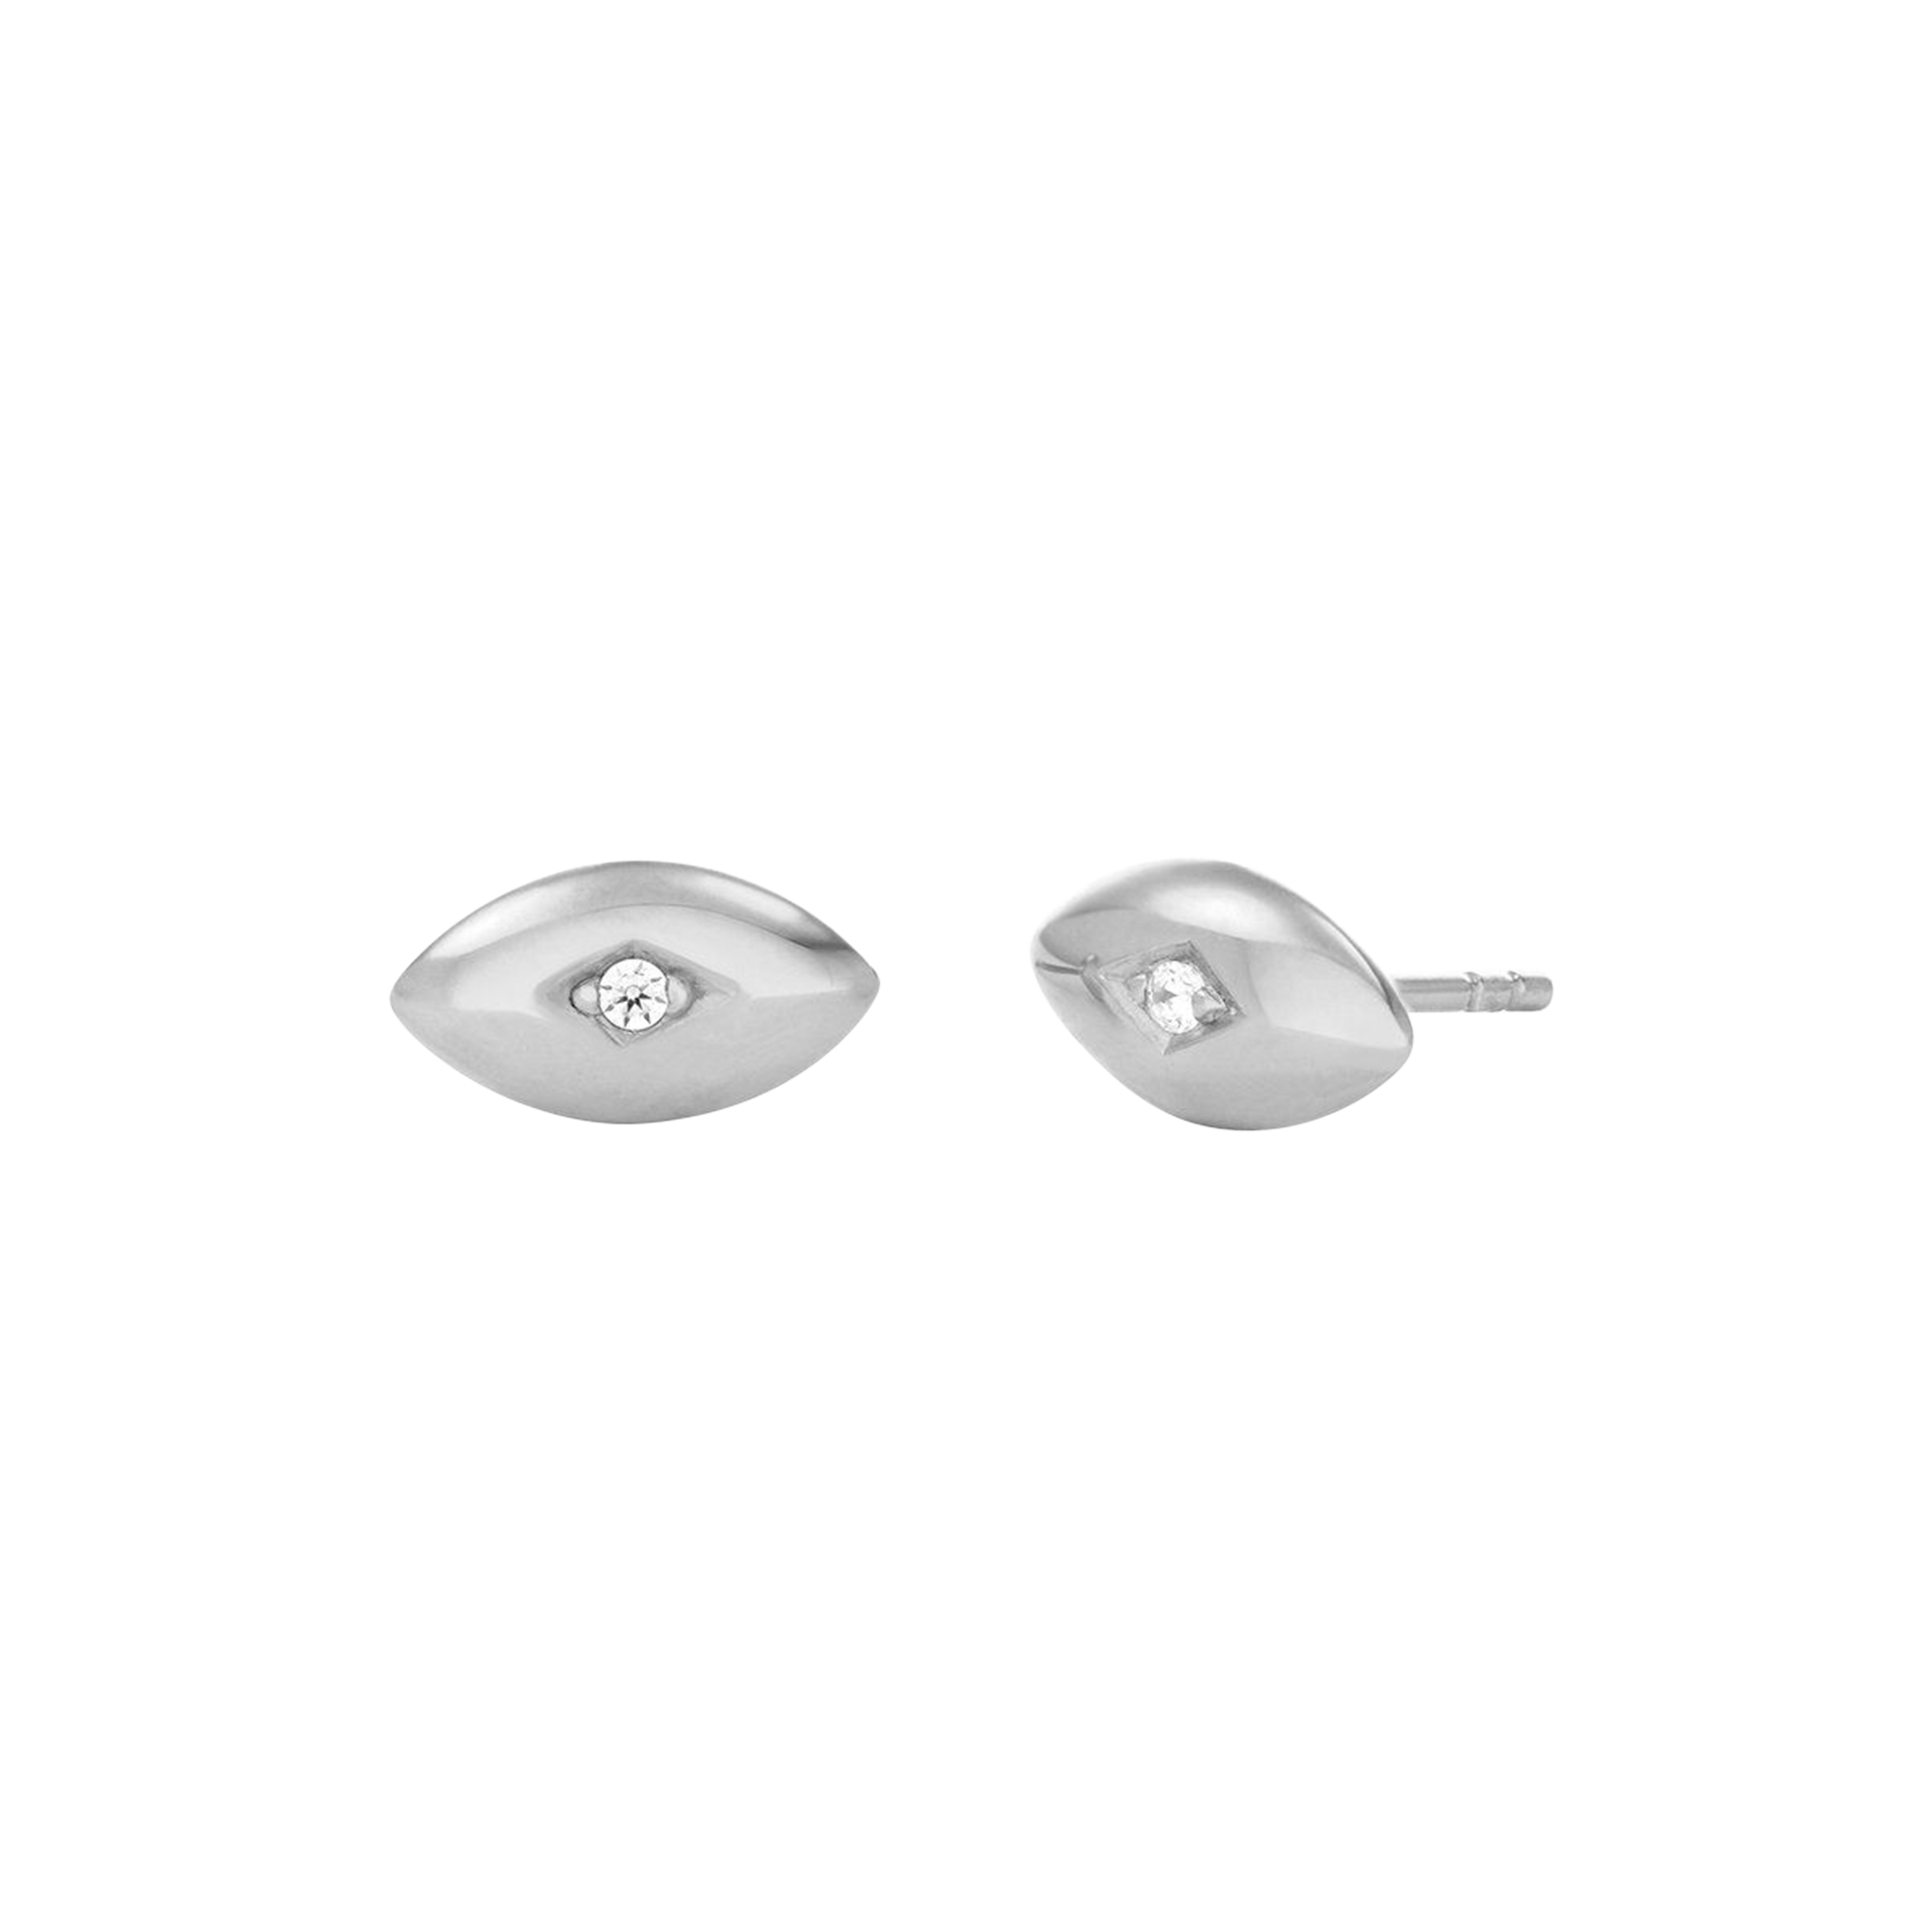 Unique Eye Design Earrings